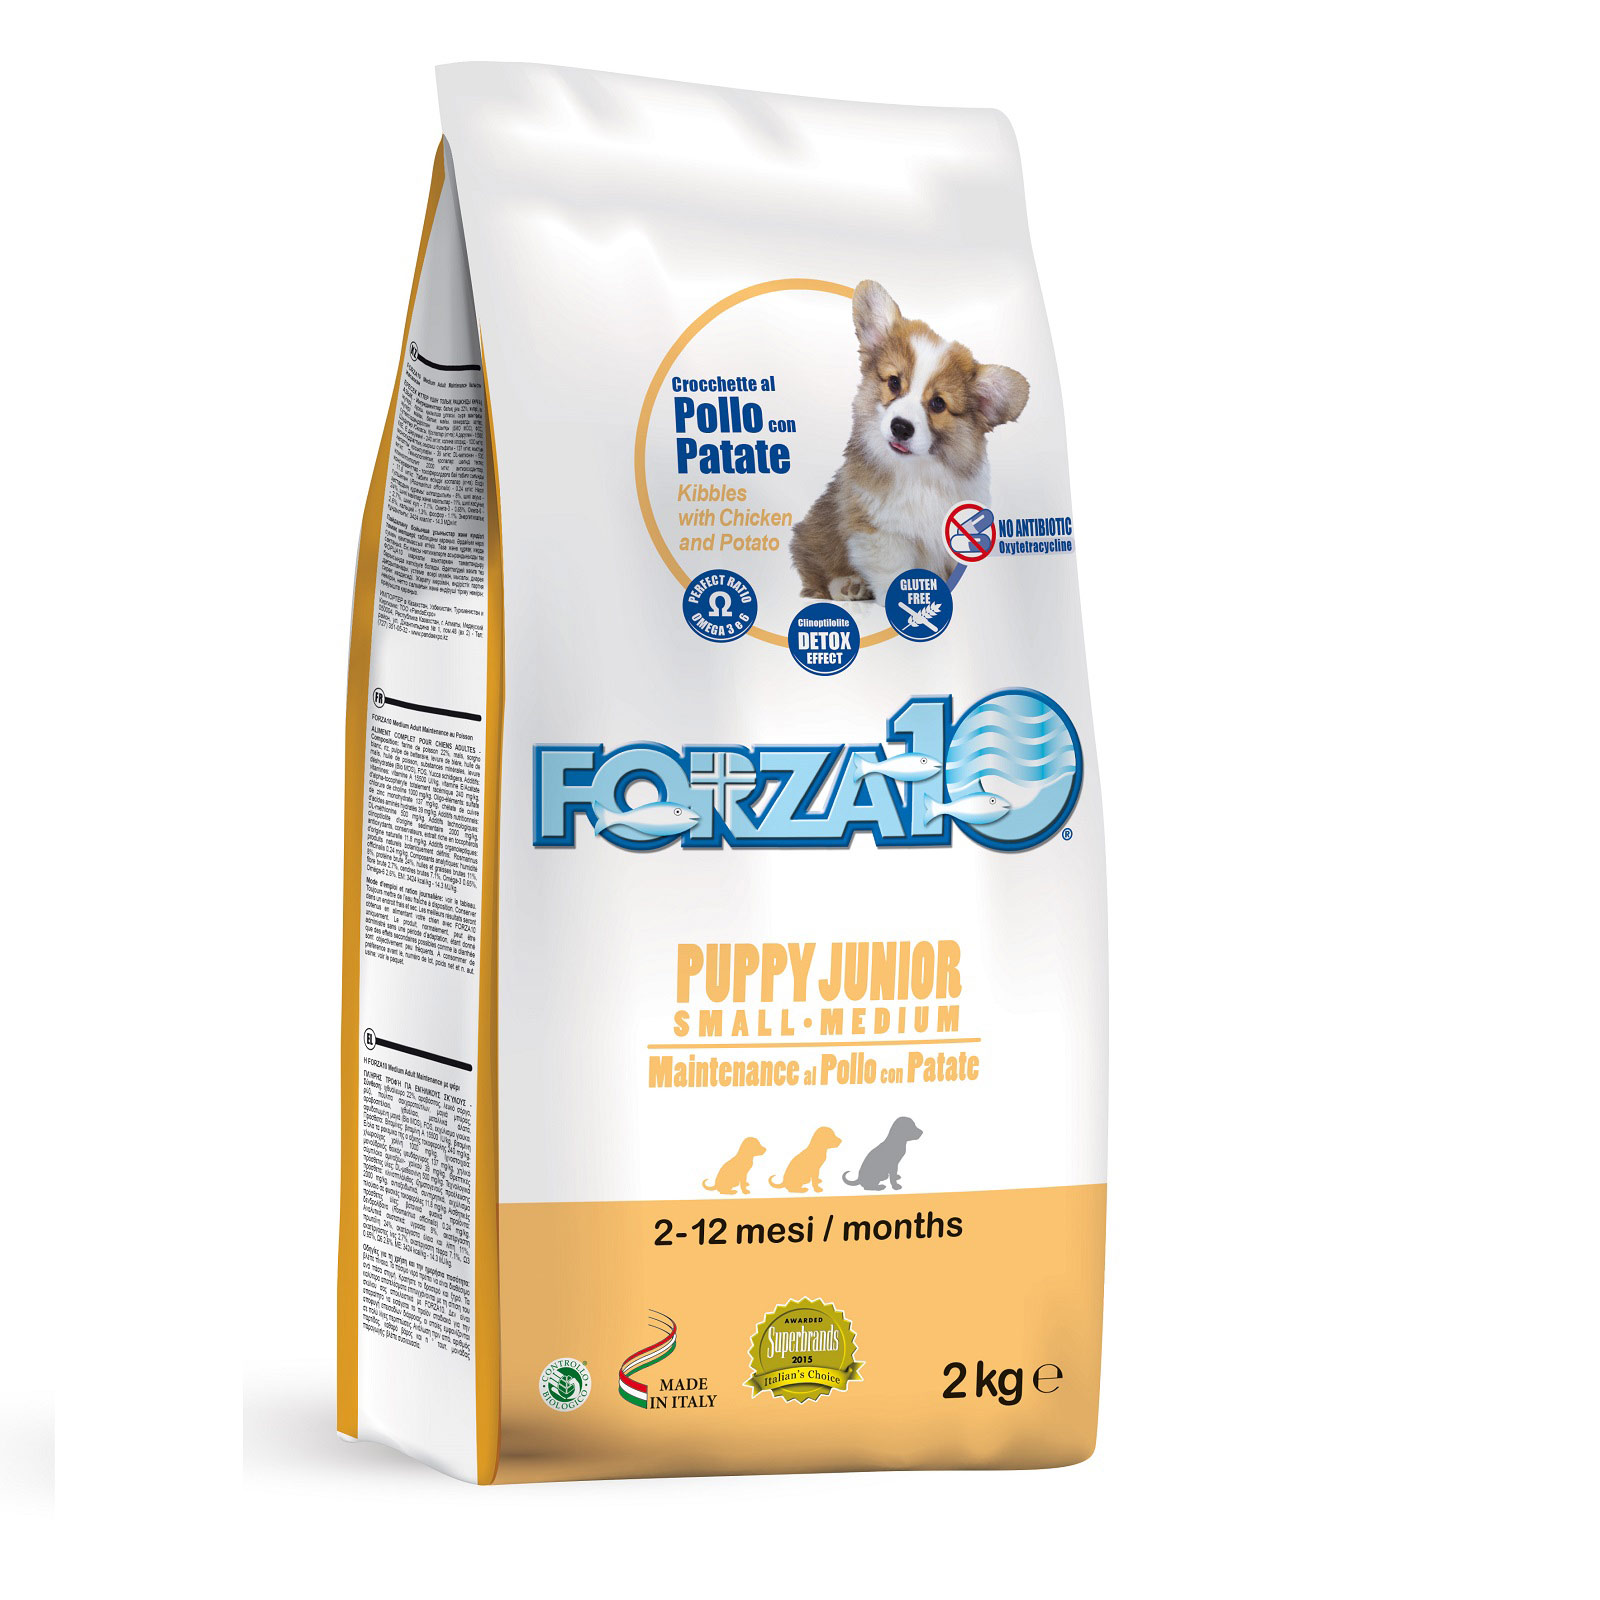 Forza10 puppy junior сухой корм с итальянской курицей и картофелем для щенков средних и крупных пород